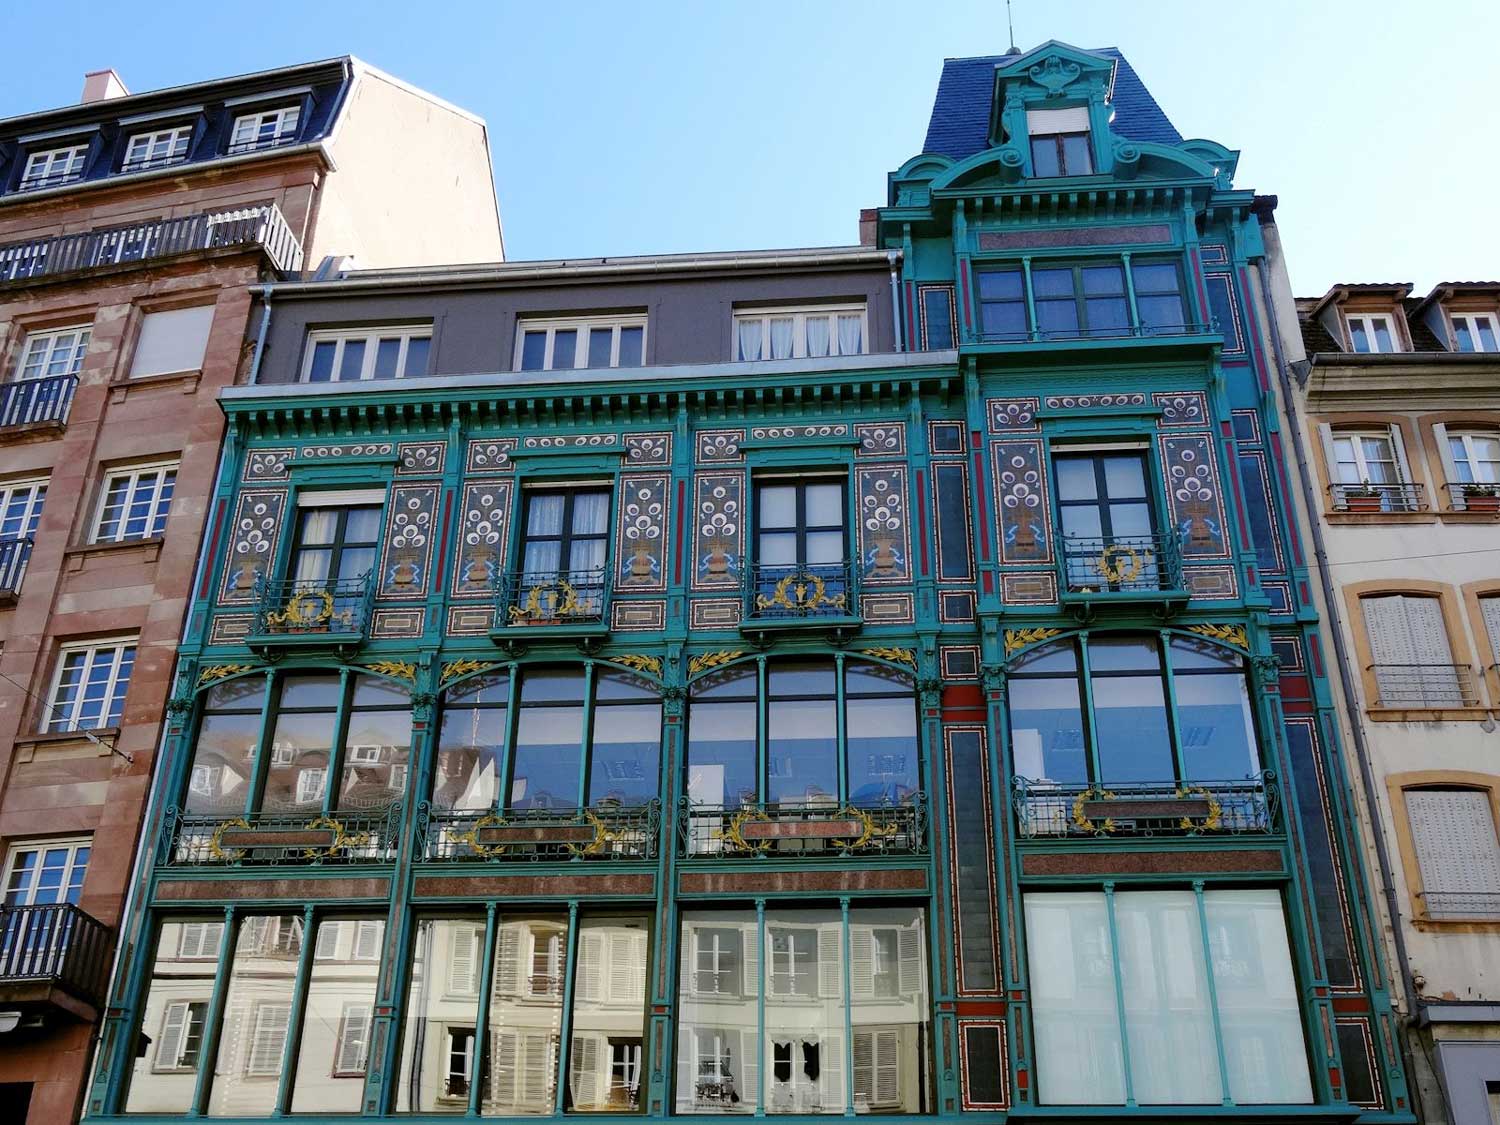 Le magasin Manrique, style Art Nouveau ou Jugendstil